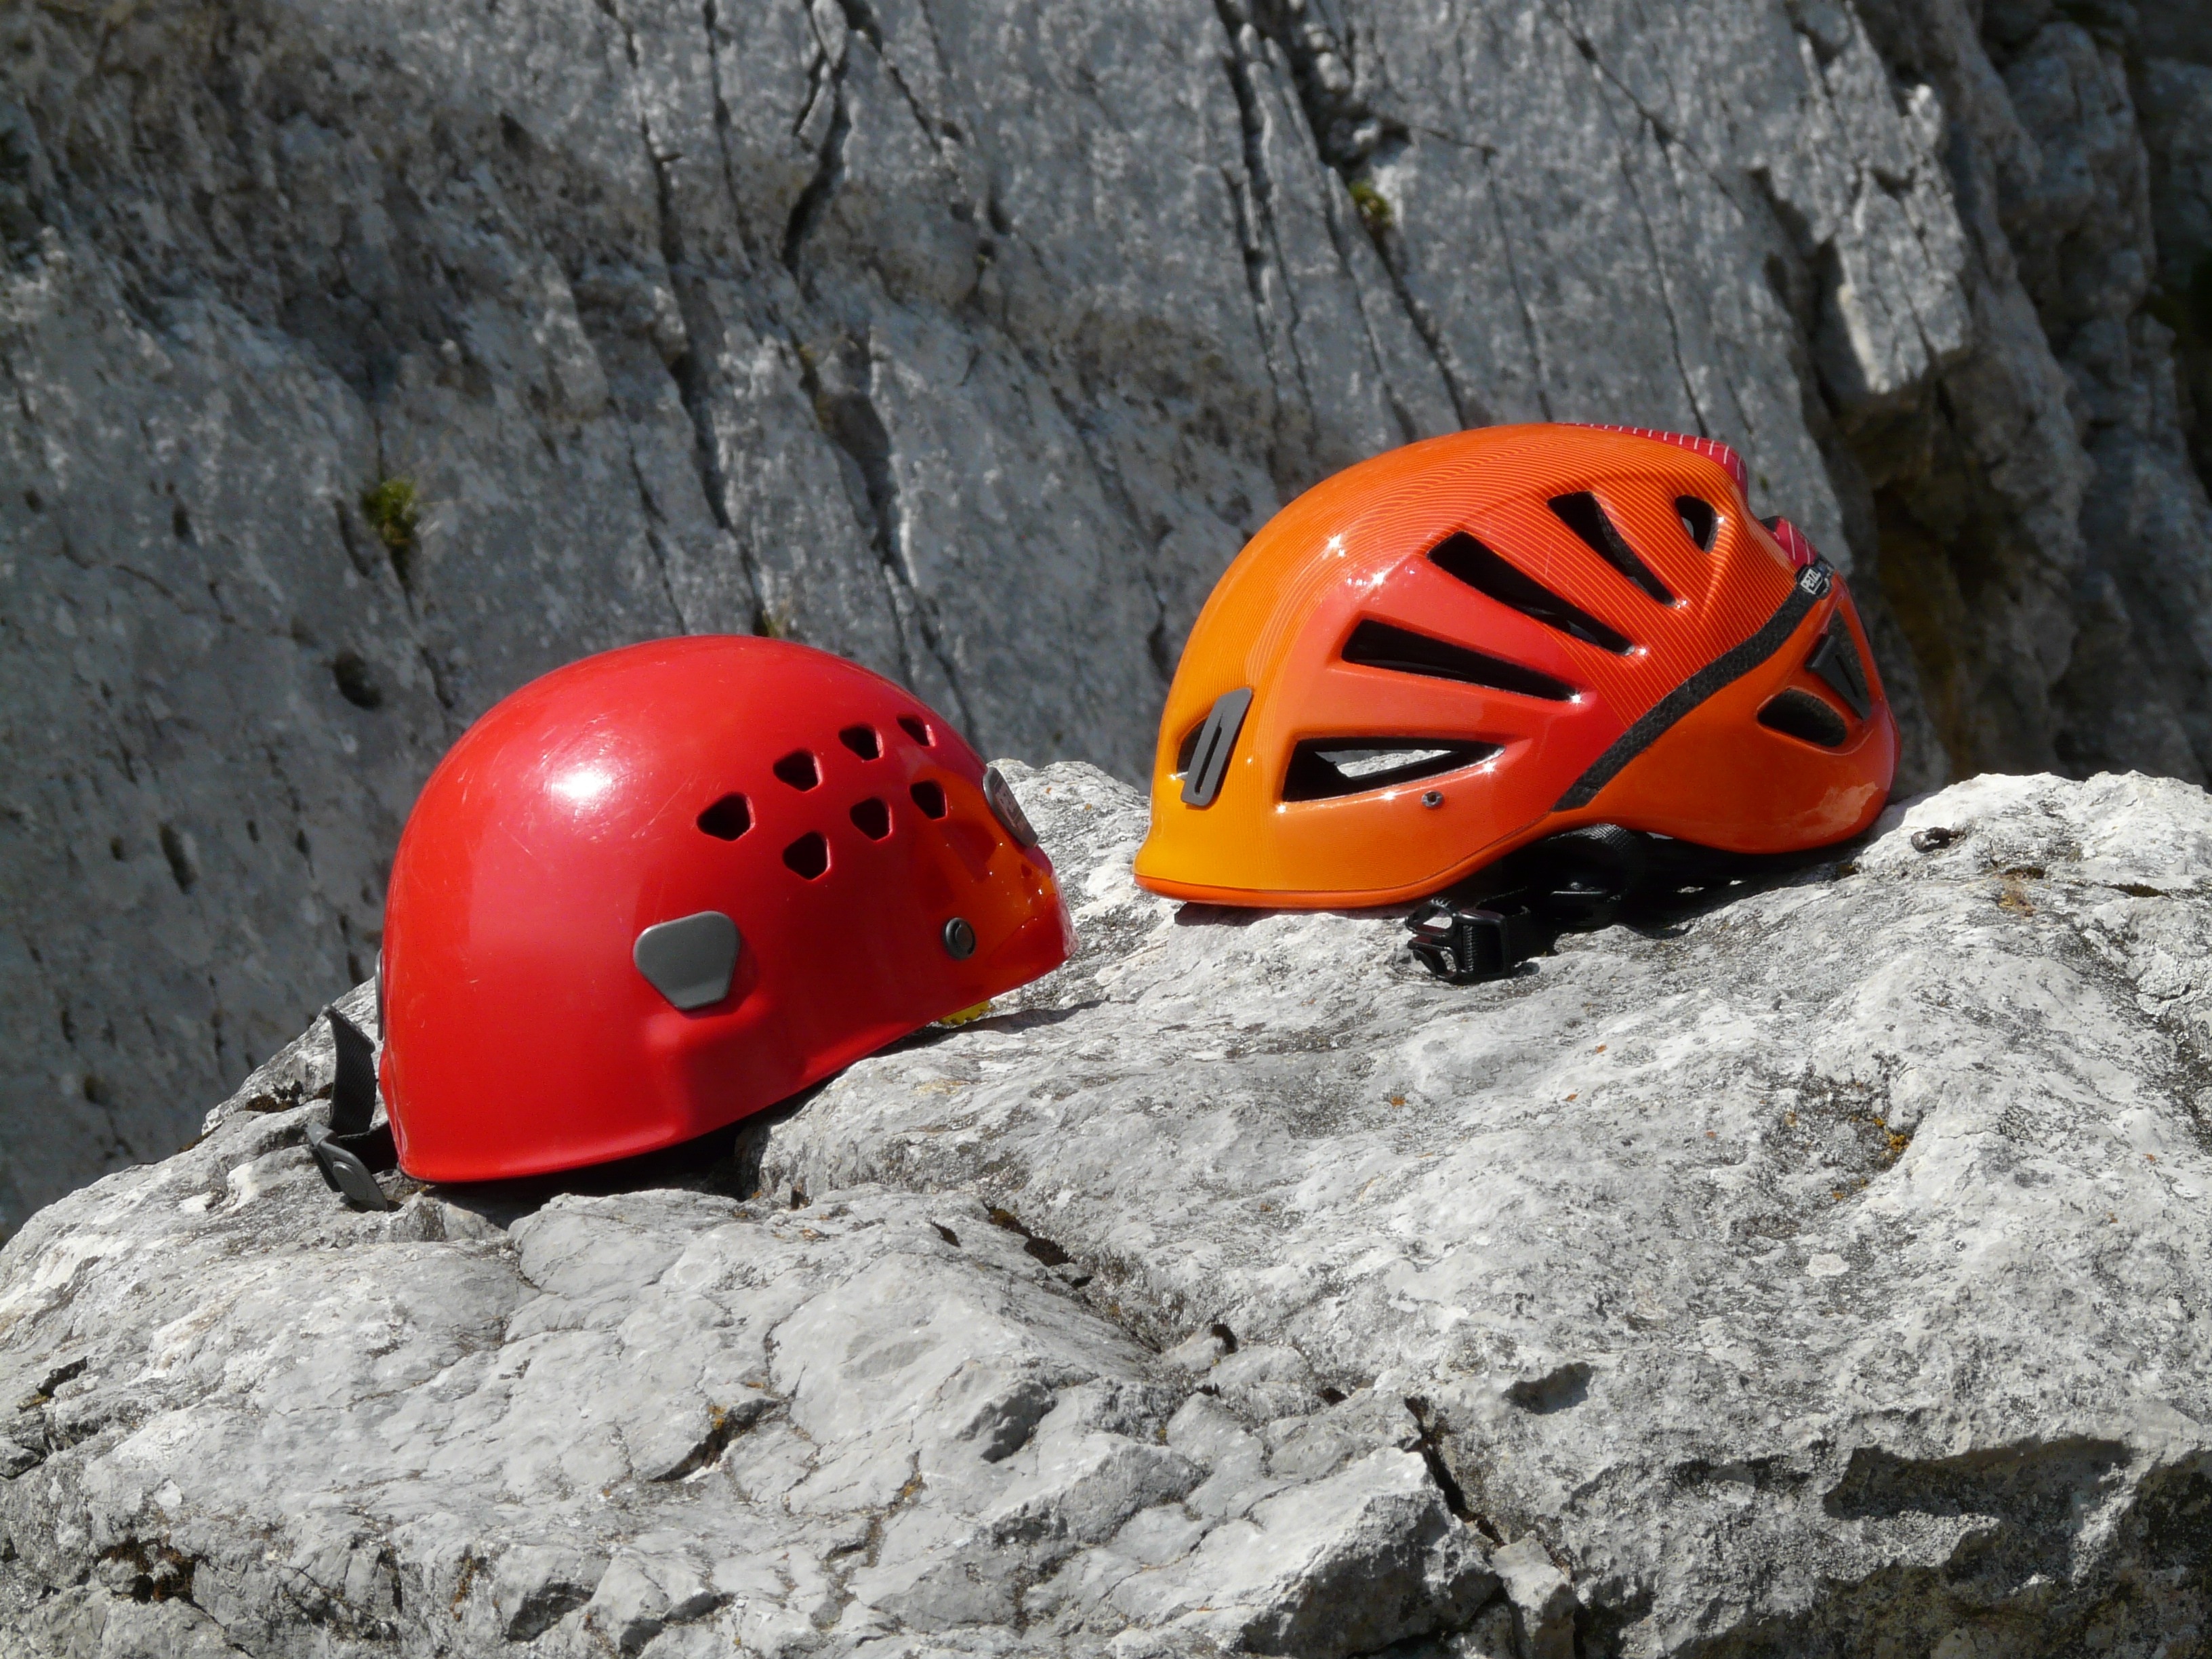 2 bicycle helmets